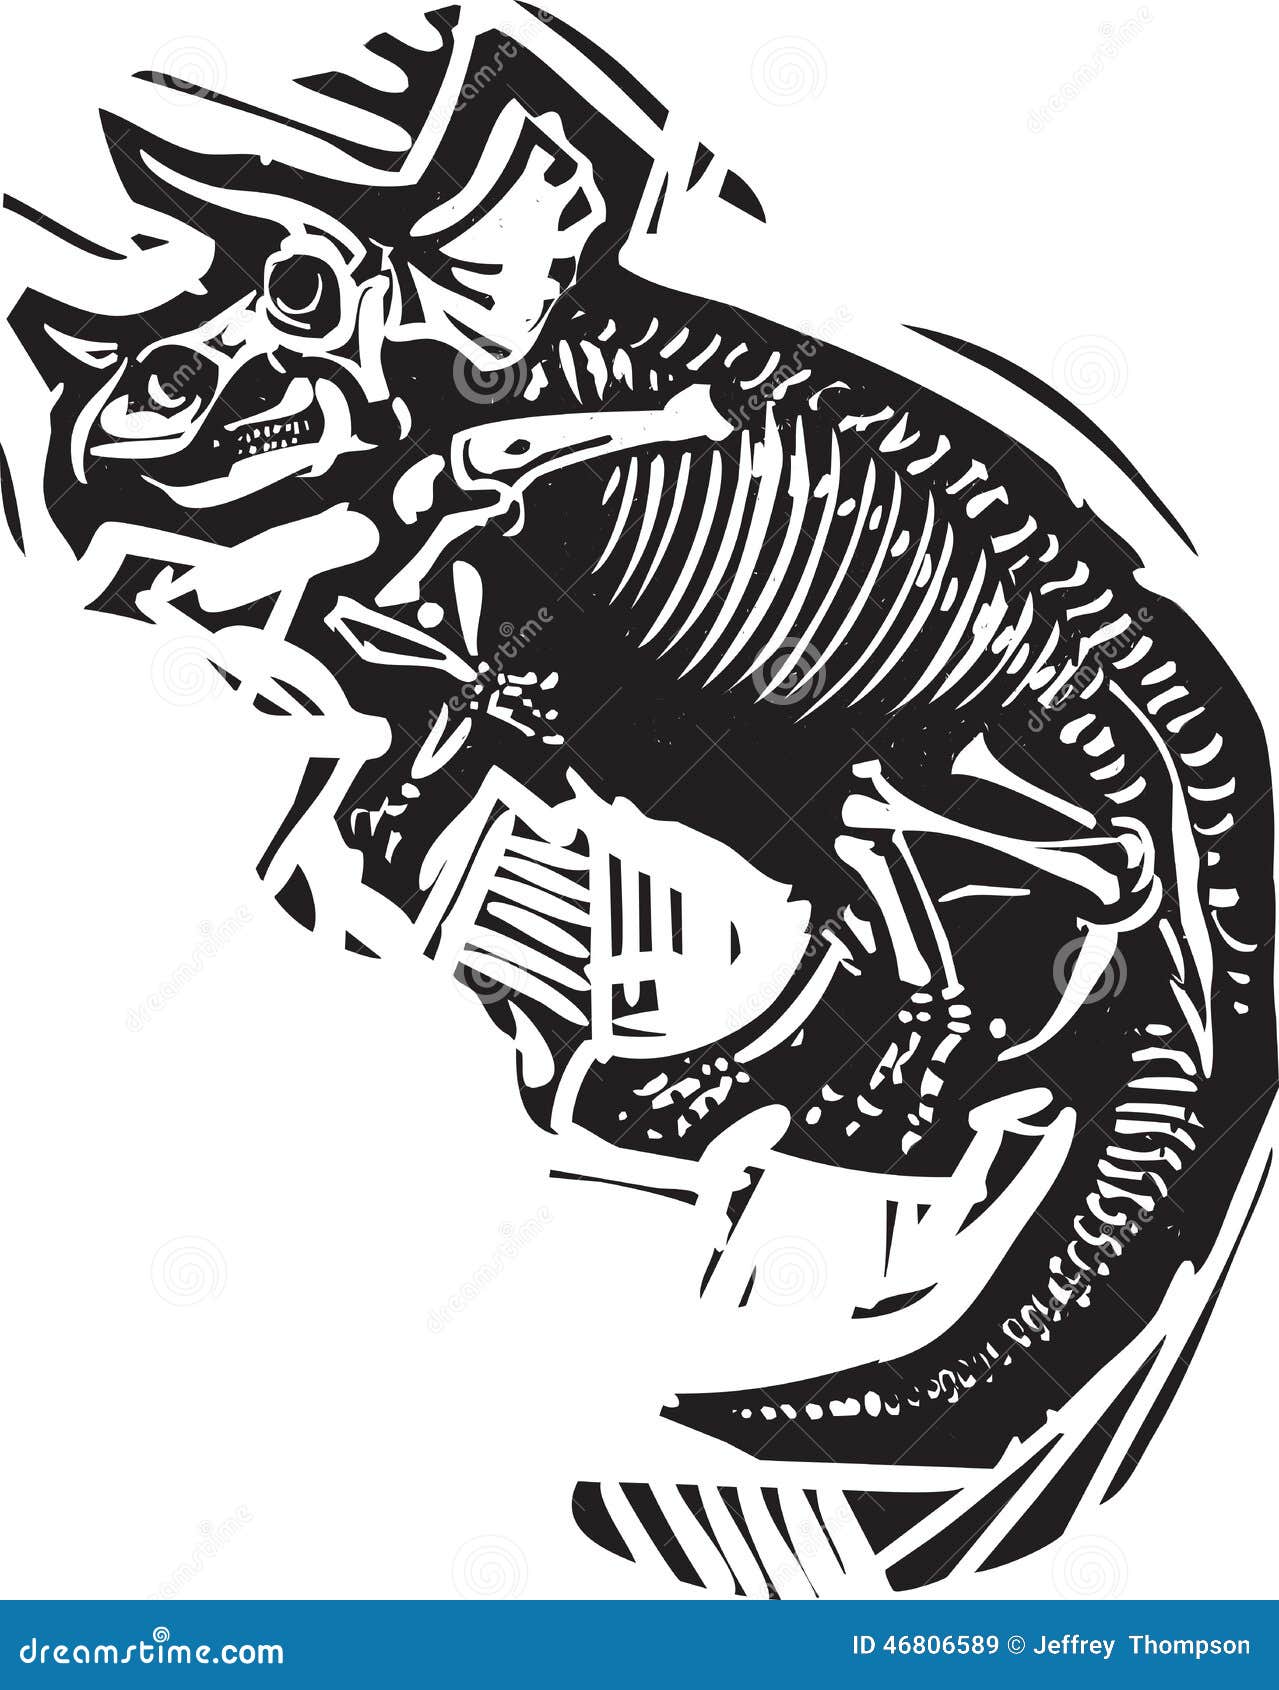 Premium Vector  Abstract black line dinosaur triceratops skull